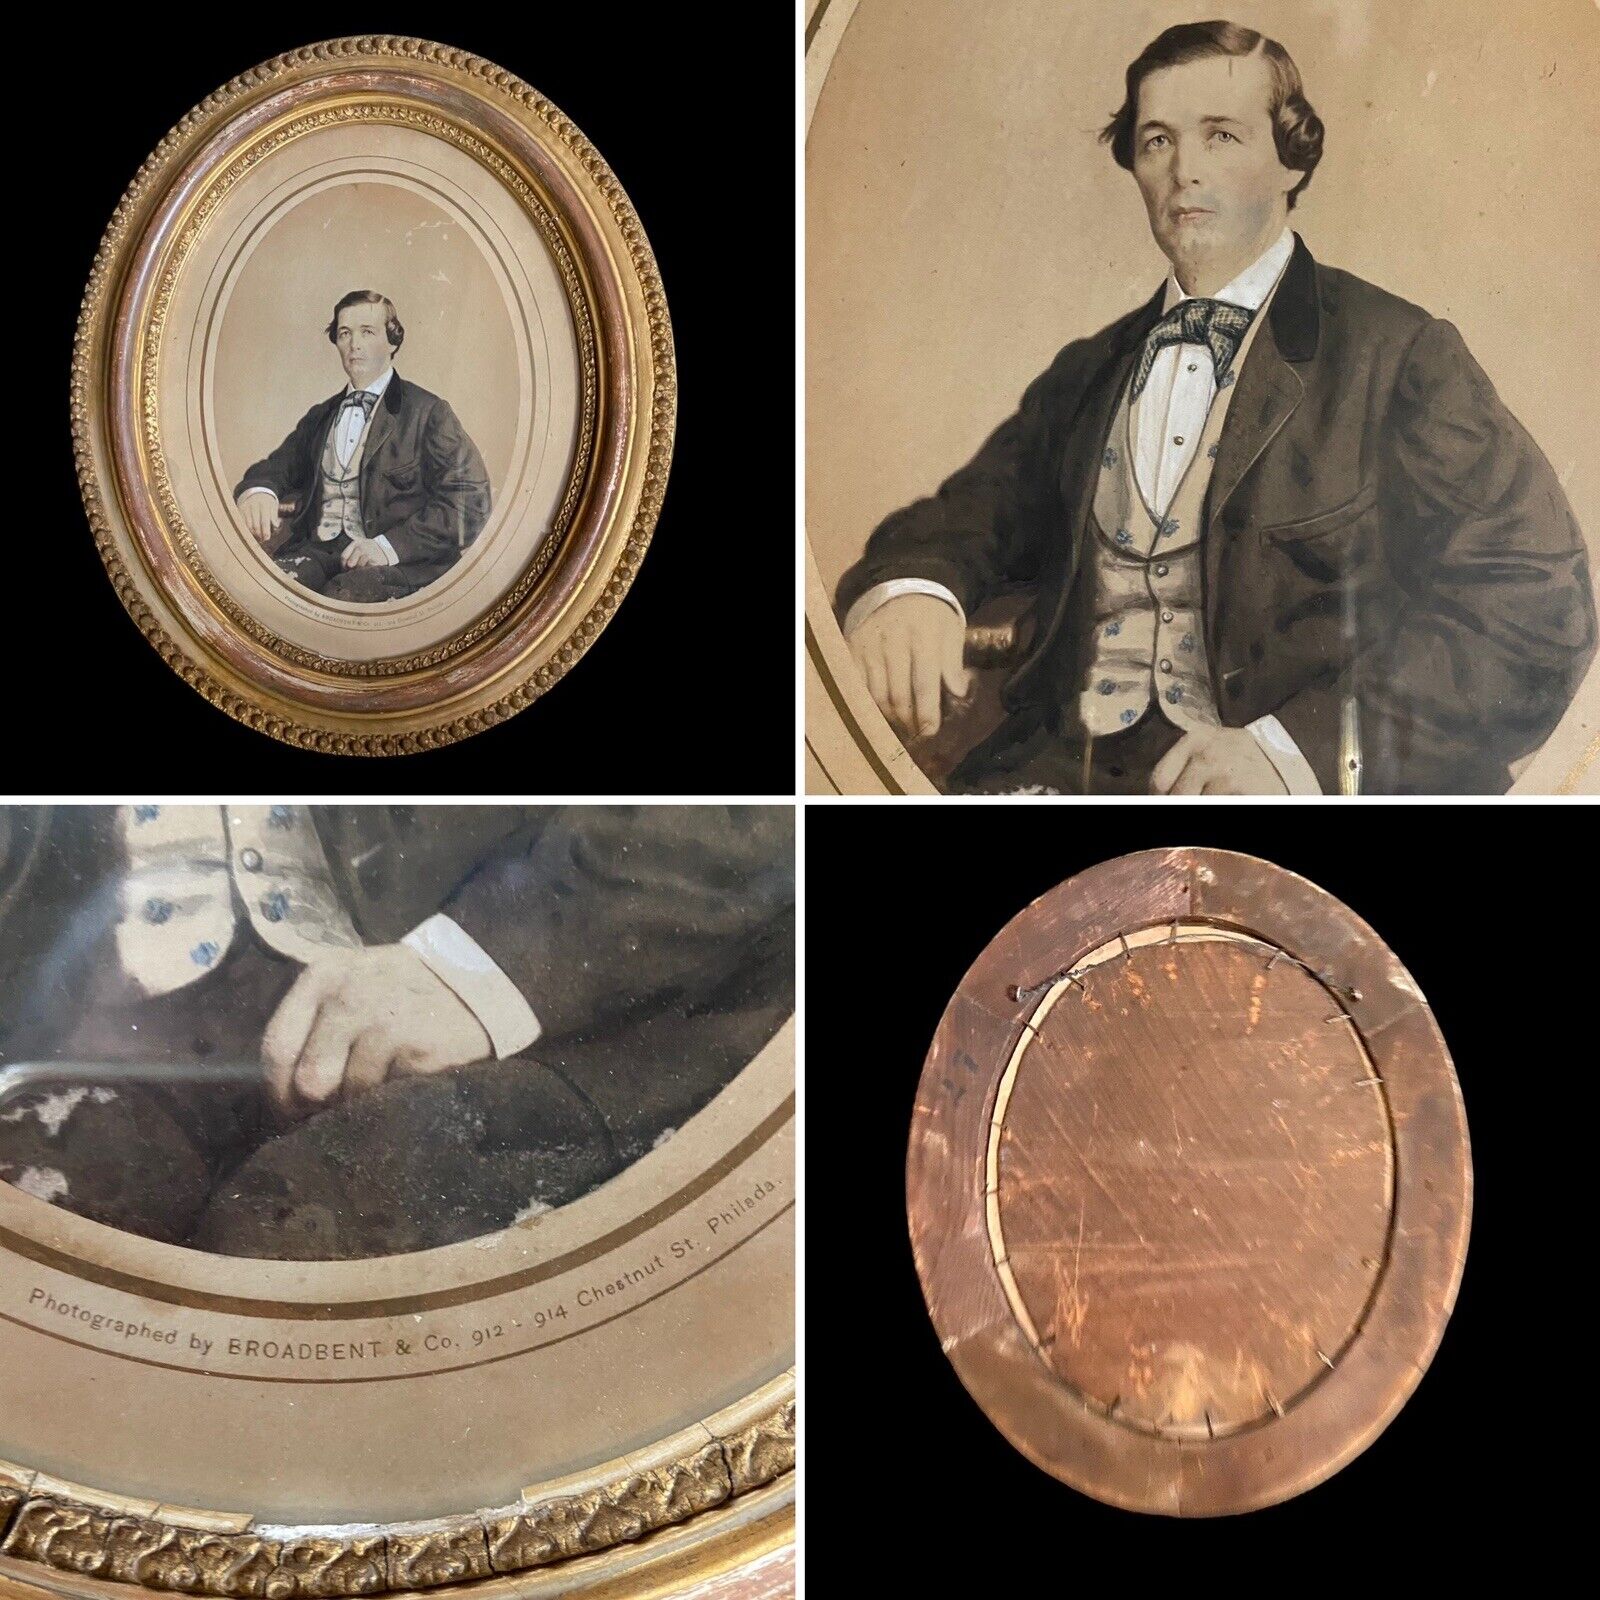 ANTIQUE 1860's Civil War Era Gentleman Portrait Photograph by BROADBENT & CO PA